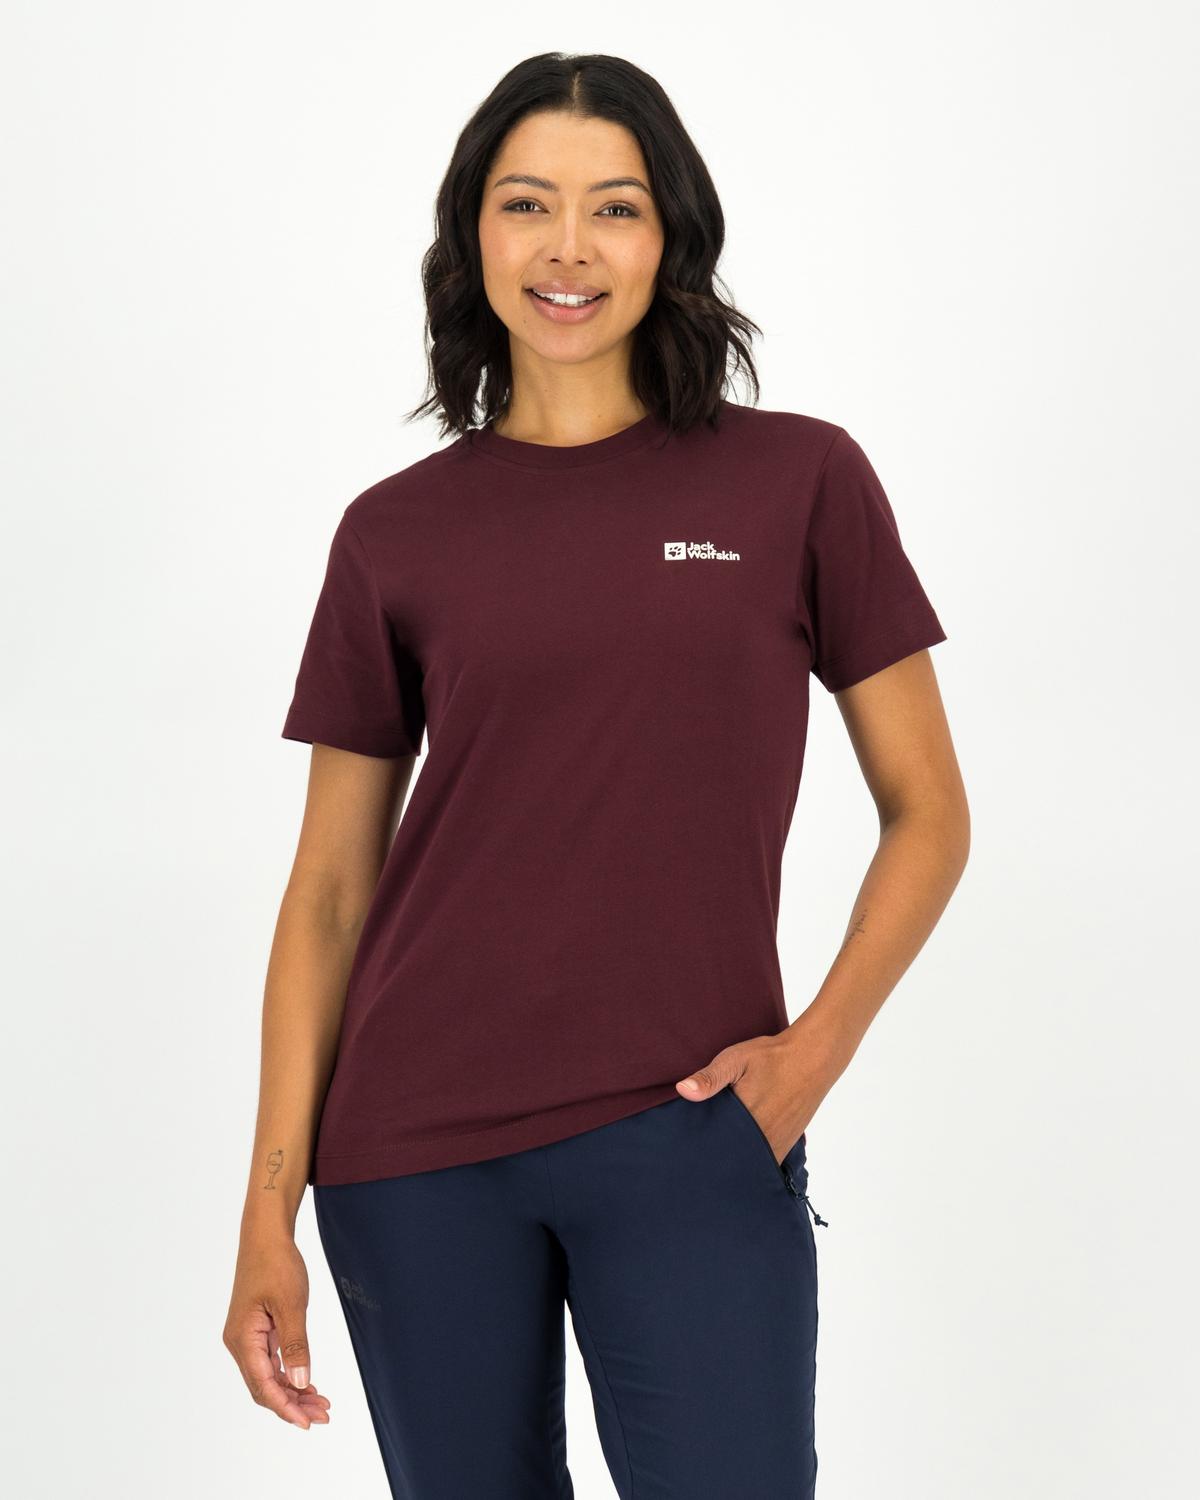 Jack Wolfskin Women’s Essential Slim Fit Cotton T-shirt -  Burgundy